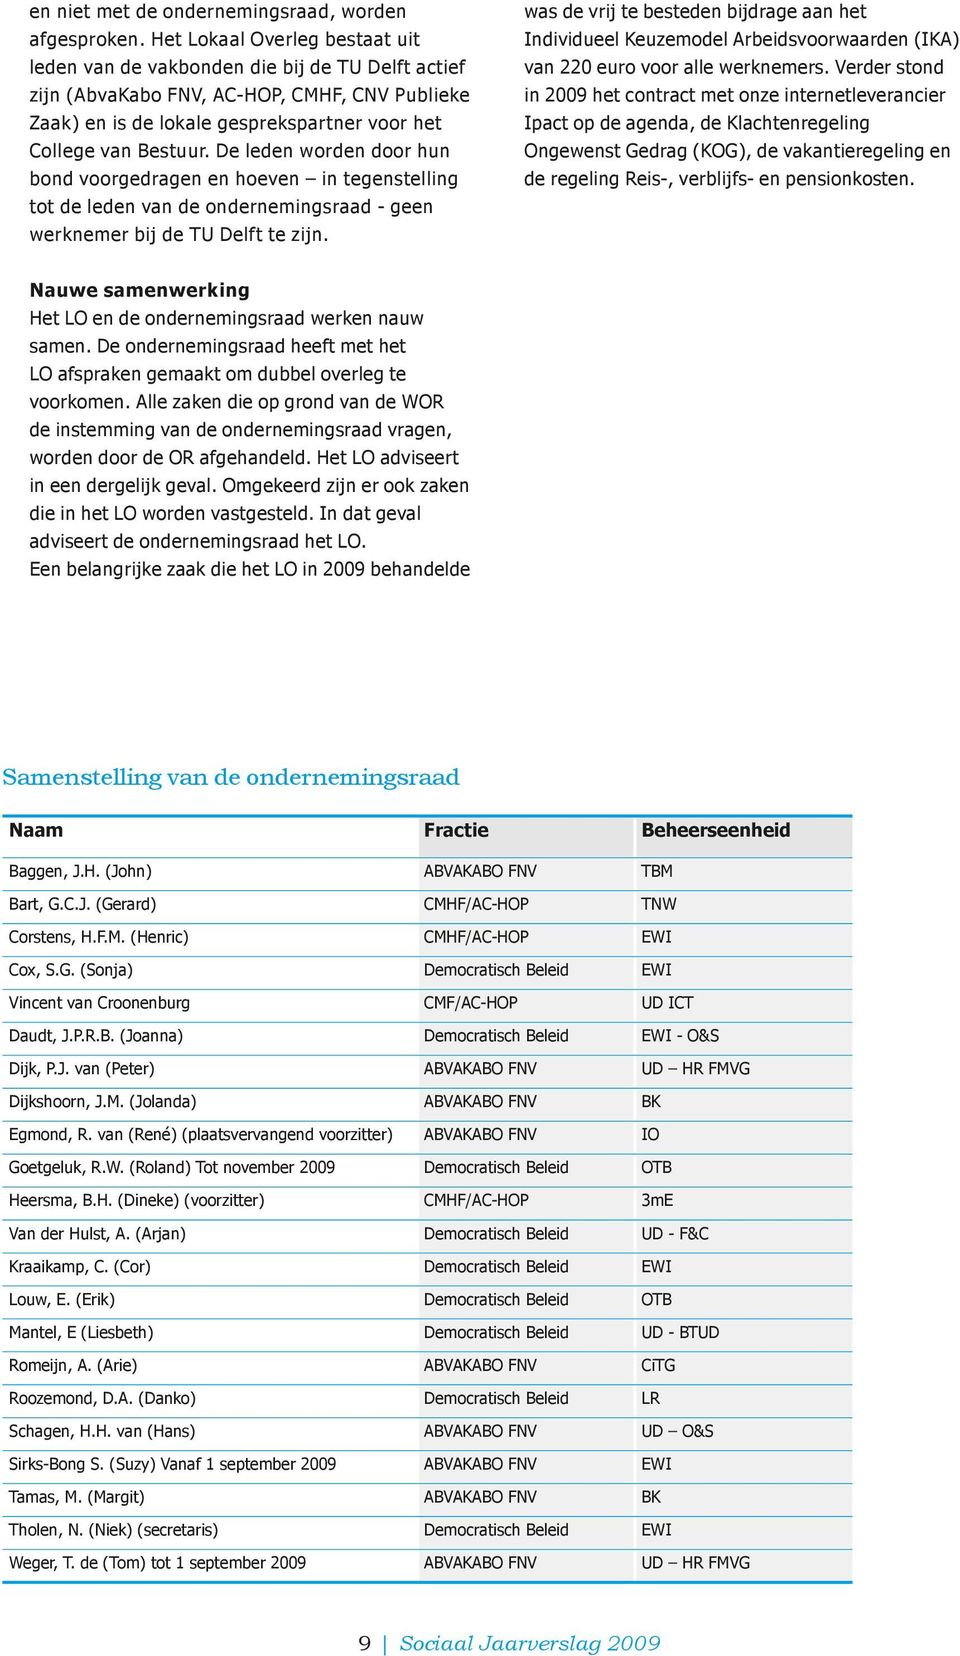 De leden worden door hun bond voorgedragen en hoeven in tegenstelling tot de leden van de ondernemingsraad - geen werknemer bij de TU Delft te zijn.